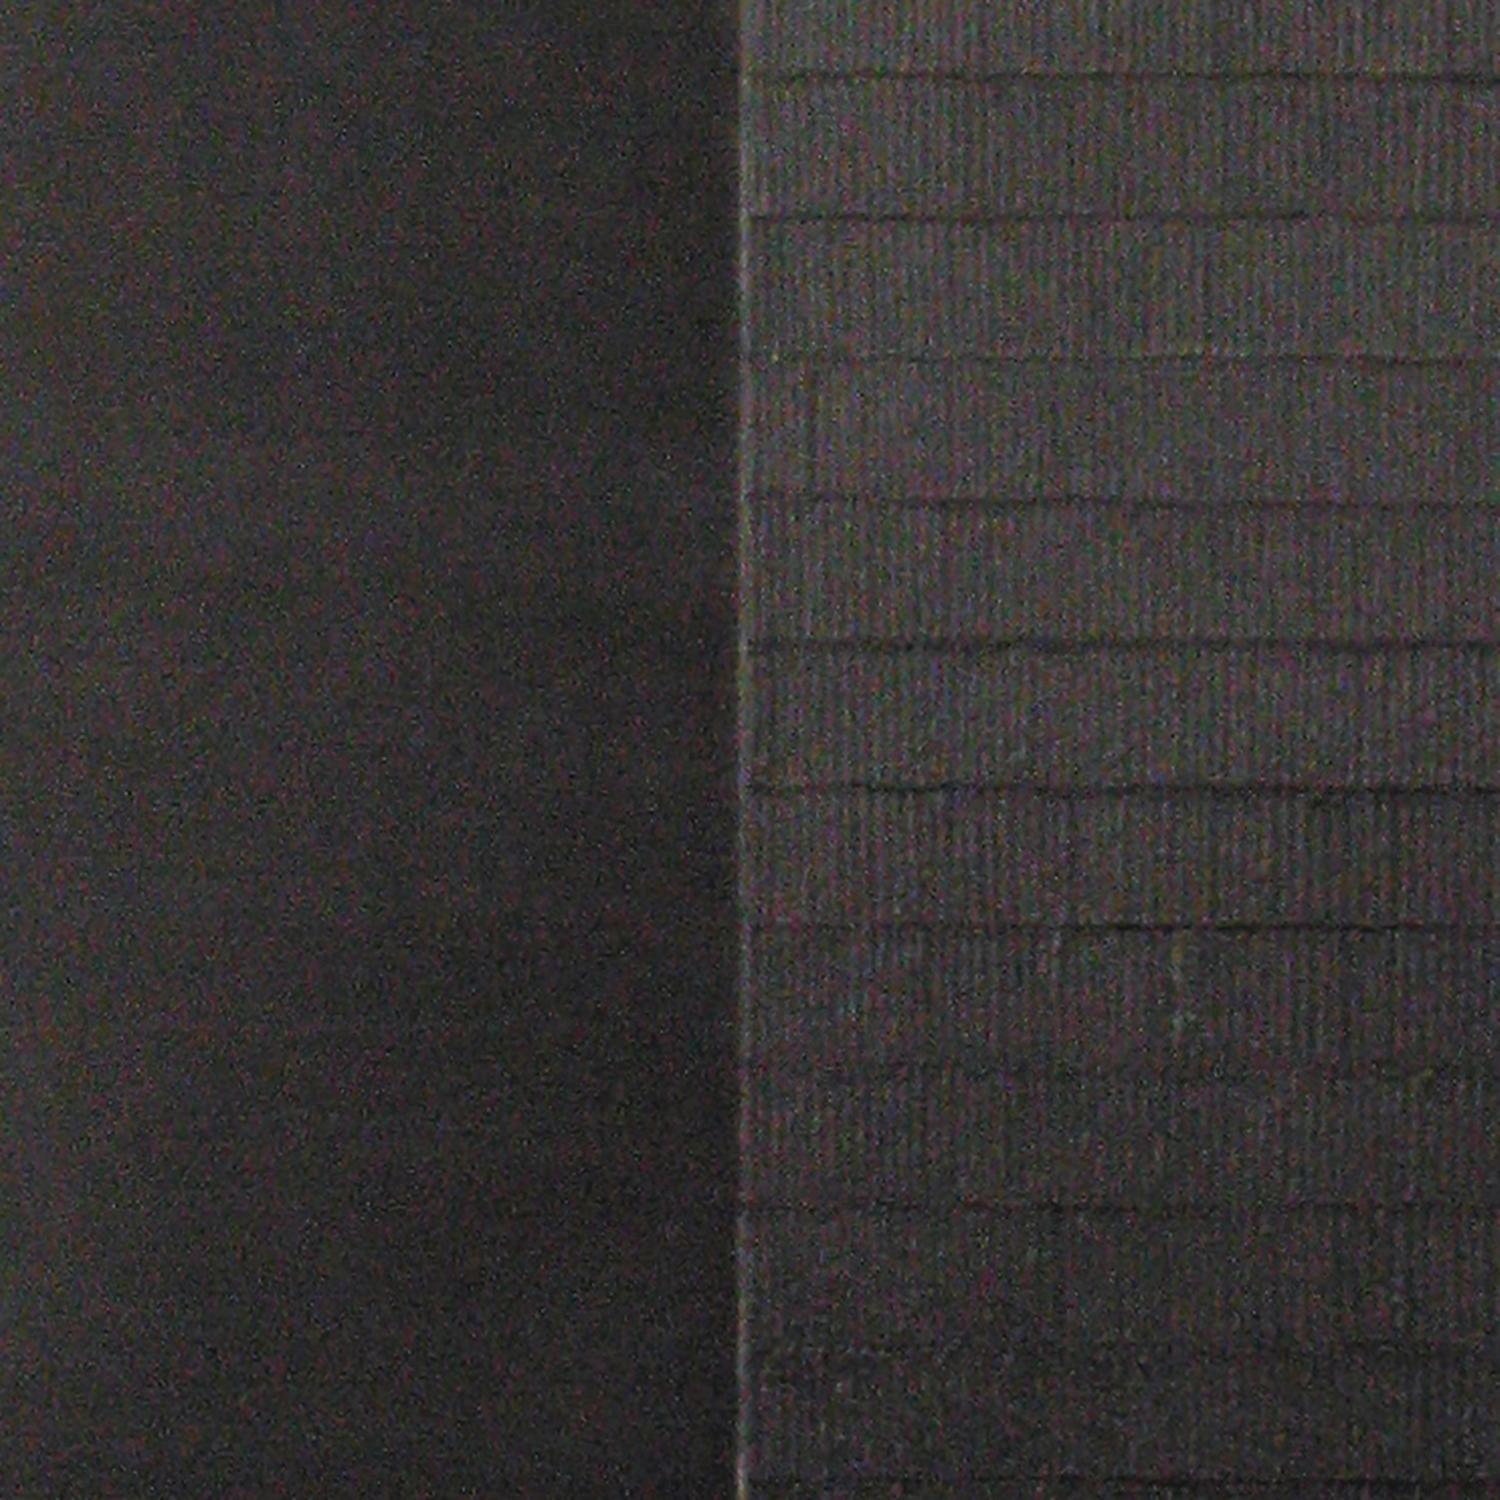 enkaustik auf Leinwand über Paneel

Der neoromantische Maler Hiro Yokose verschmilzt mehrere Schichten aus Wachs und Ölfarbe zu geheimnisvollen, verschleierten Landschaften, die von Lichtblitzen am Himmel und Spiegelungen auf dem Wasser beleuchtet